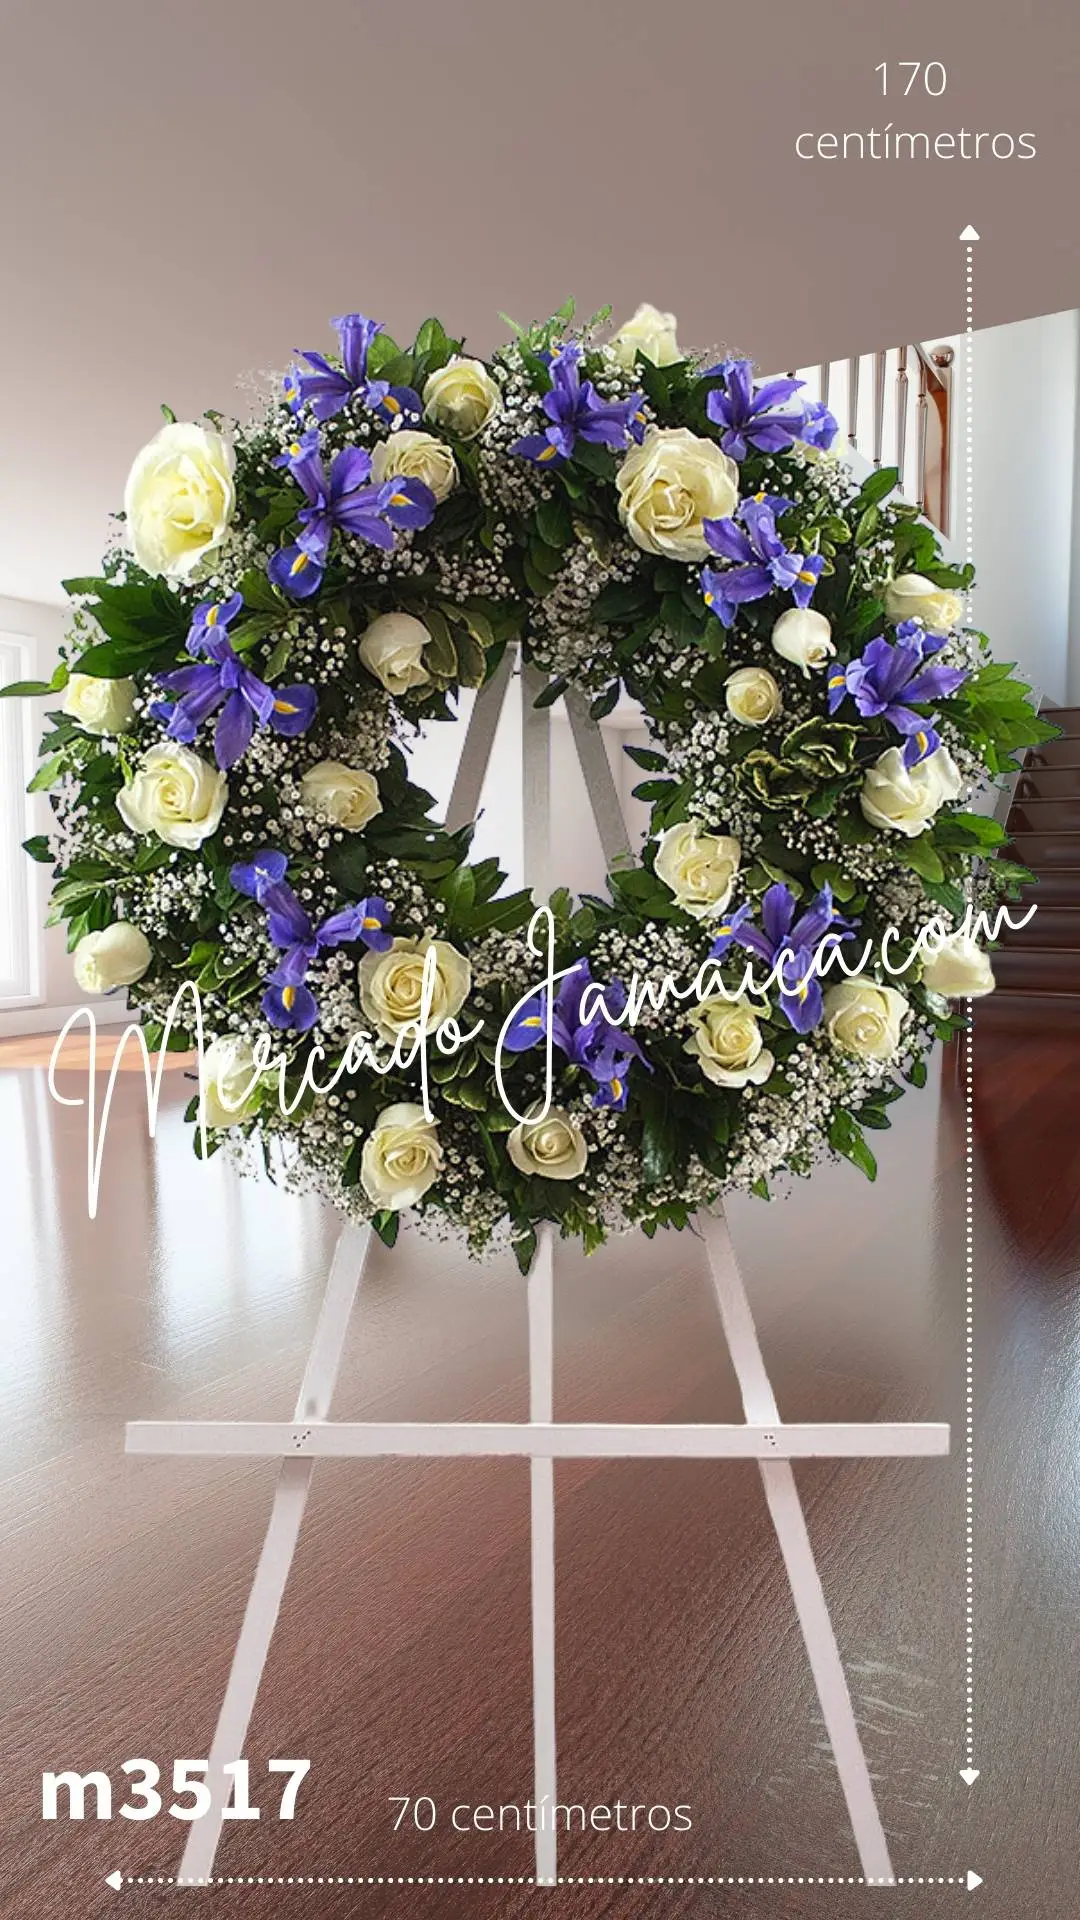 Corona Rosas con Iris Azul: Un Expresión de Cielo y Paz